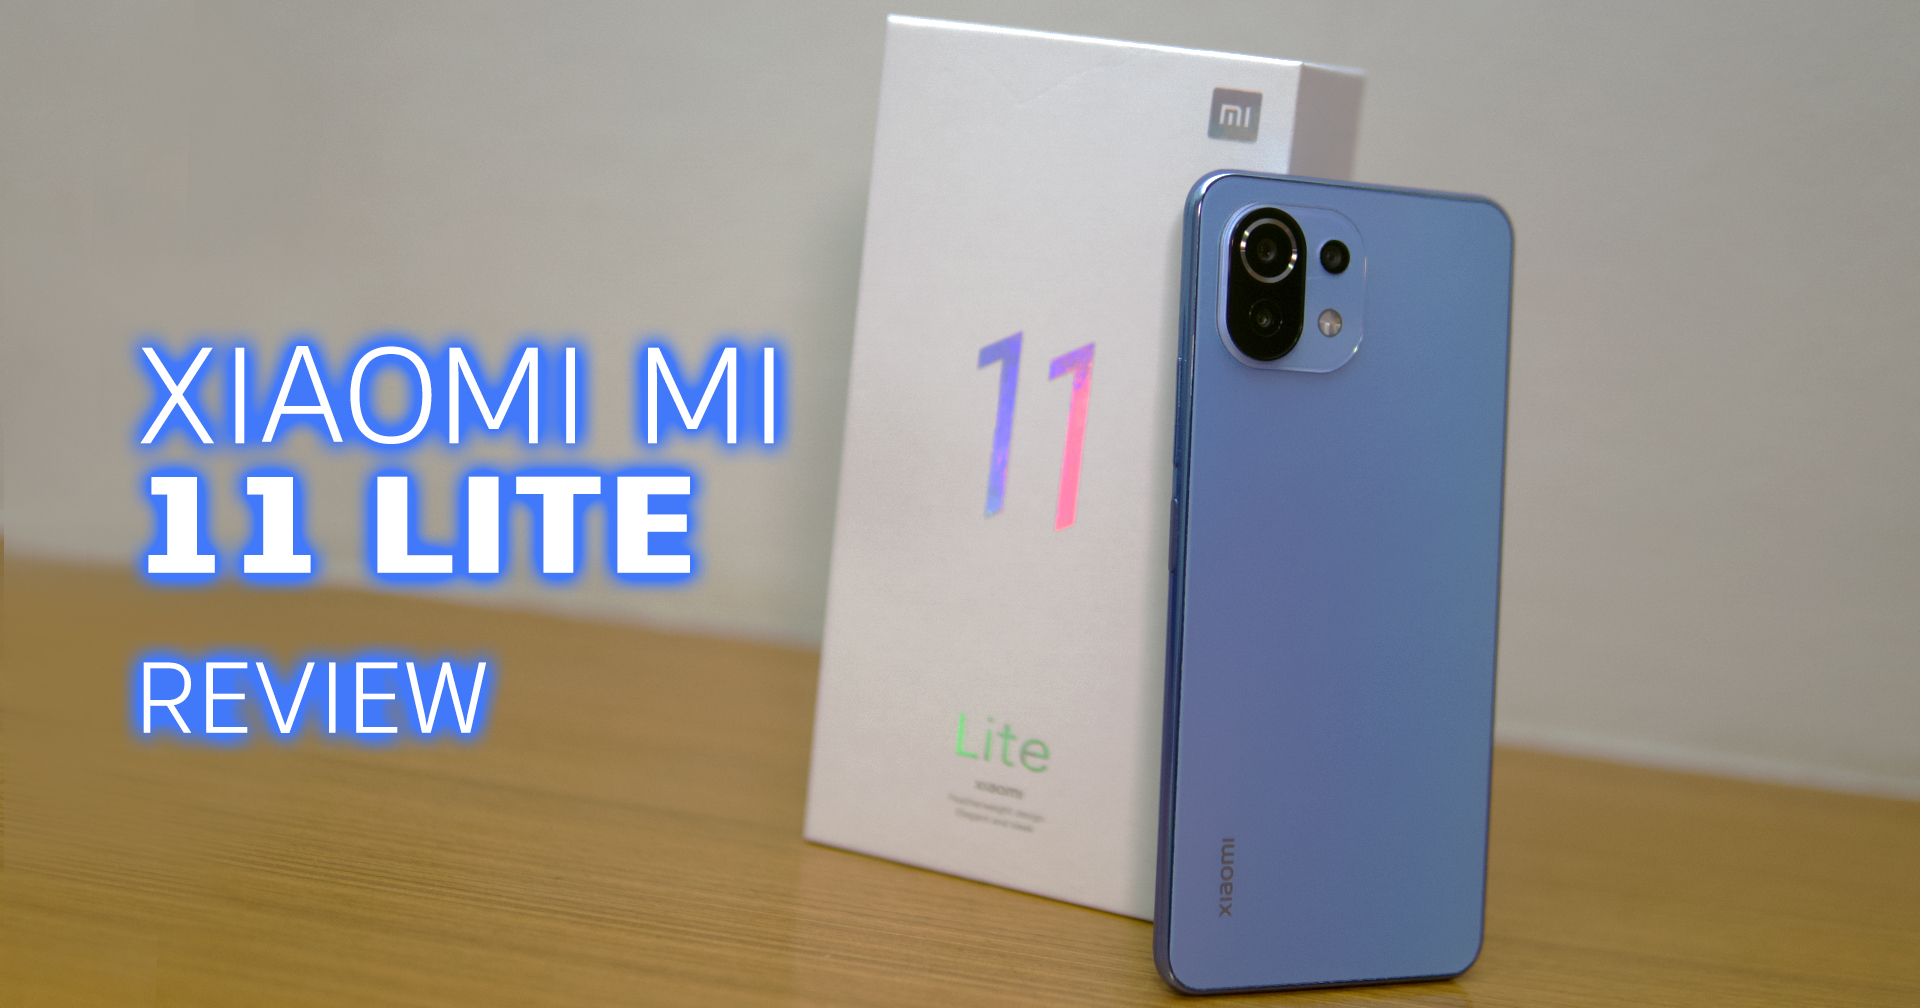 [รีวิว] Xiaomi Mi 11 Lite สมาร์ตโฟนสุดคุ้ม ดีไซน์พรีเมียม กล้องแจ่มเกินราคา หน้าจอสุดนุ่ม 90Hz